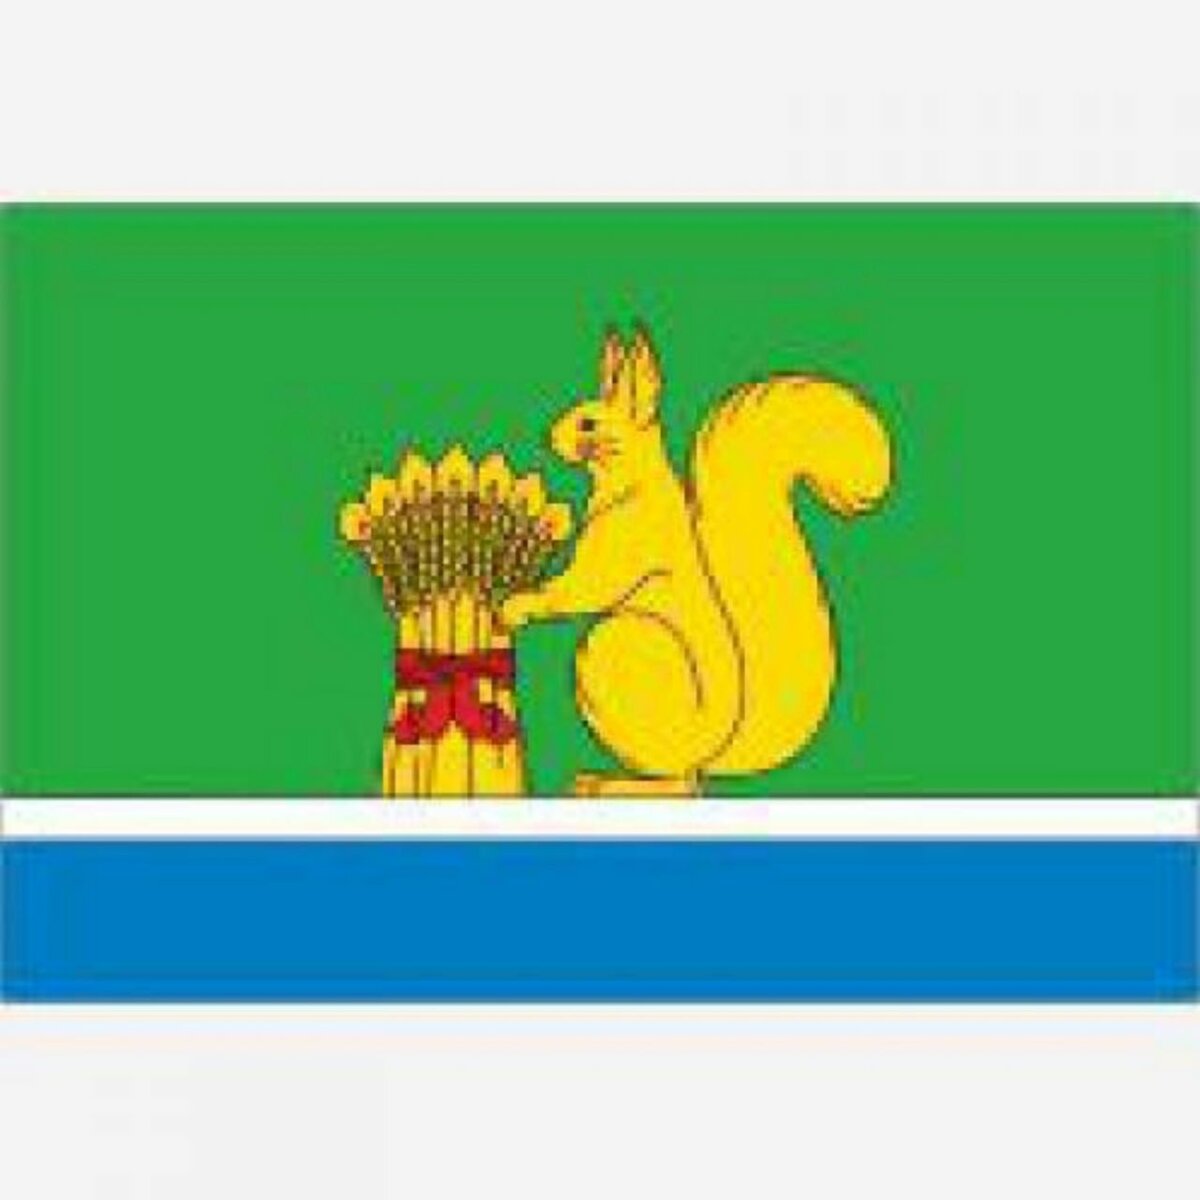 Флаг Уржумского района Кировской области.